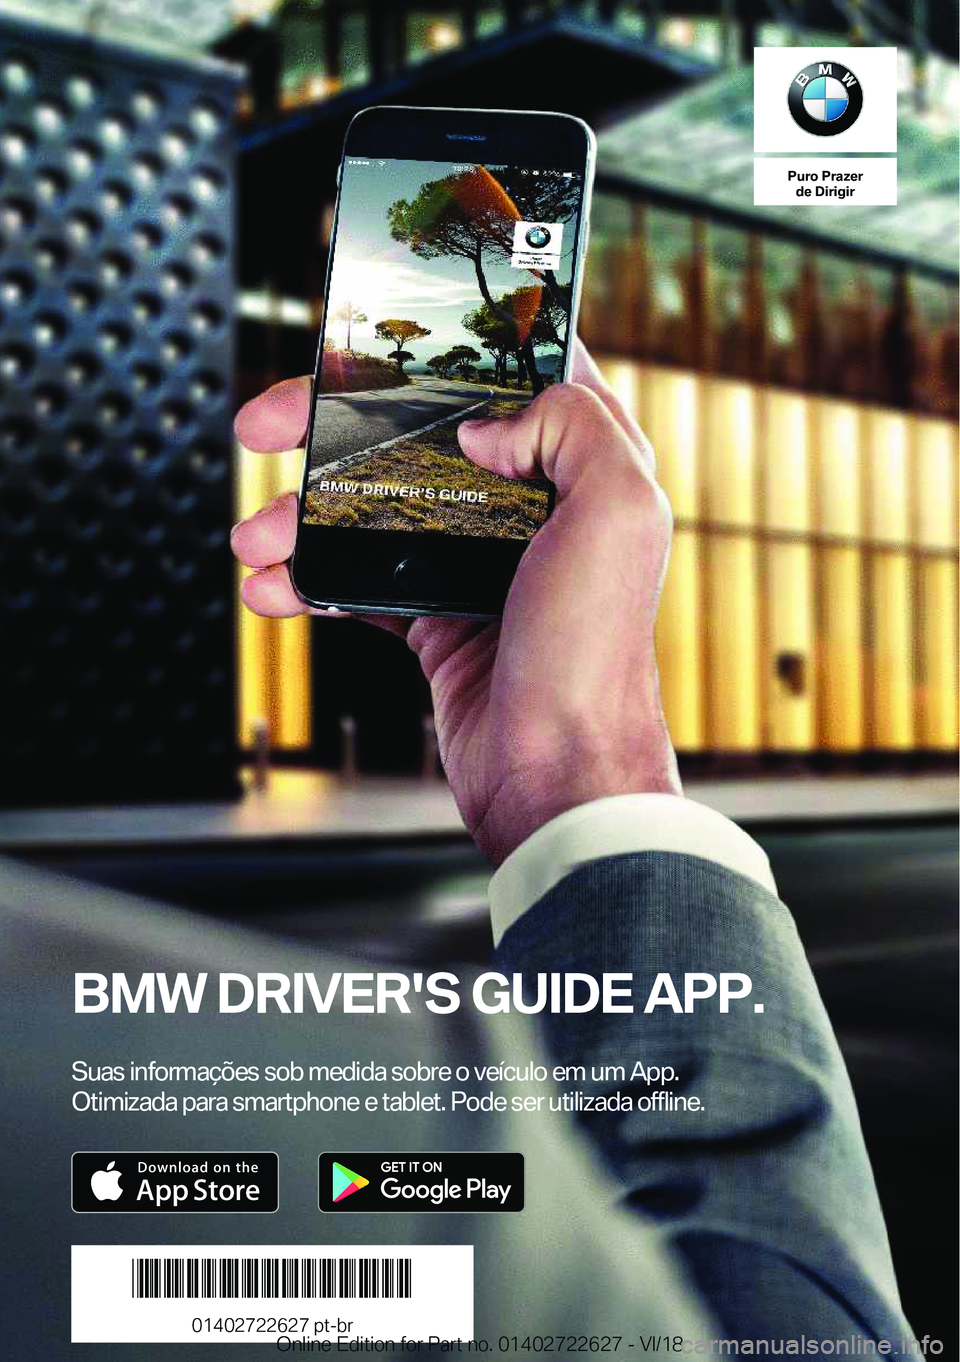 BMW 5 SERIES 2019  Manual do condutor (in Portuguese) �P�u�r�o��P�r�a�z�e�r�d�e��D�i�r�i�g�i�r
�B�M�W��D�R�I�V�E�R�'�S��G�U�I�D�E��A�P�P�.
�S�u�a�s��i�n�f�o�r�m�a�